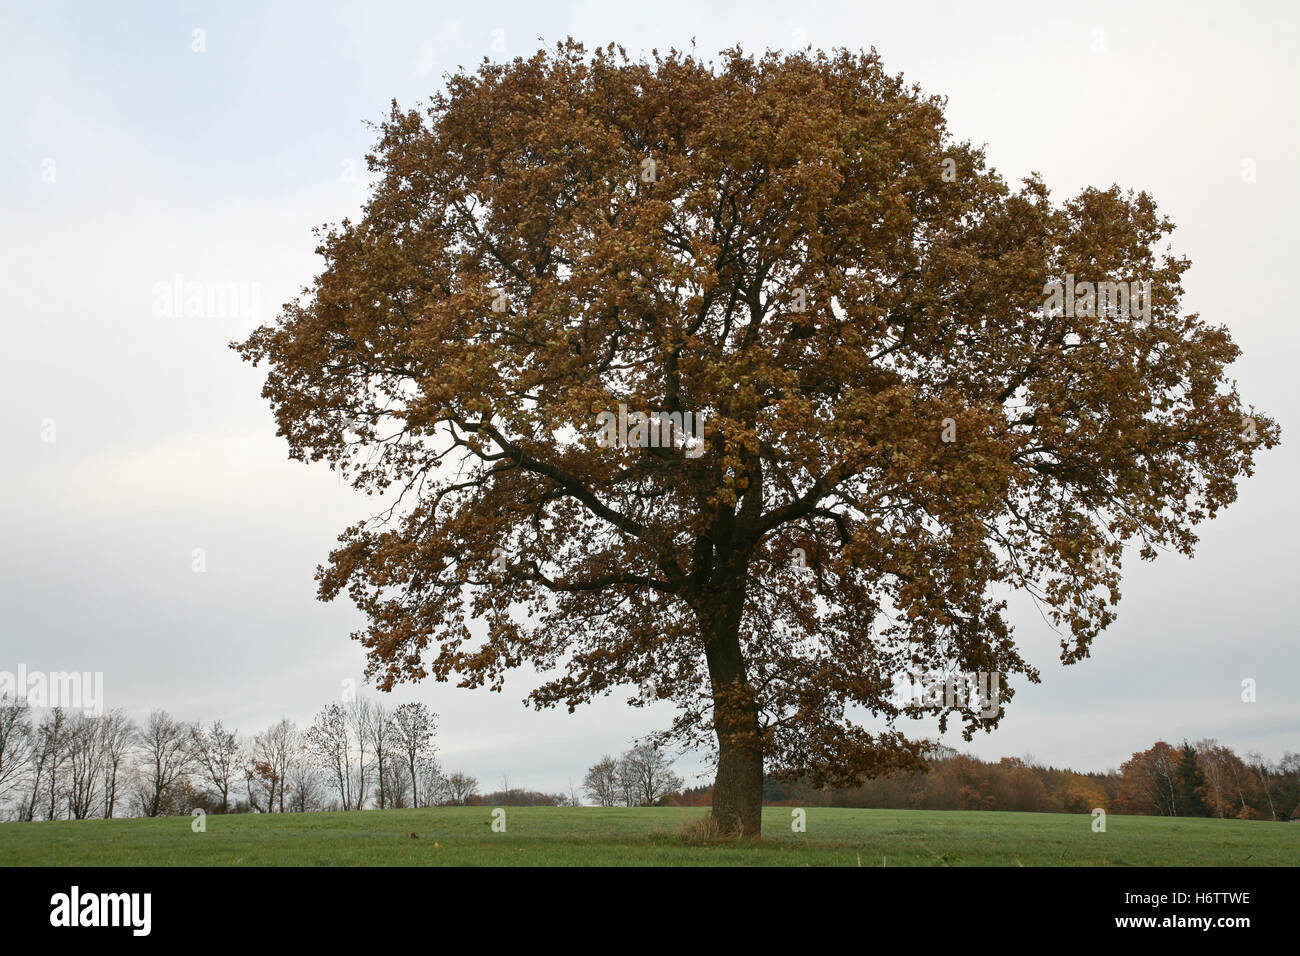 Albero albero a foglie decidue oak stagioni stagione grande grande enorme extreme potente imponente immenso albero relativo albero a foglie decidue oak Foto Stock